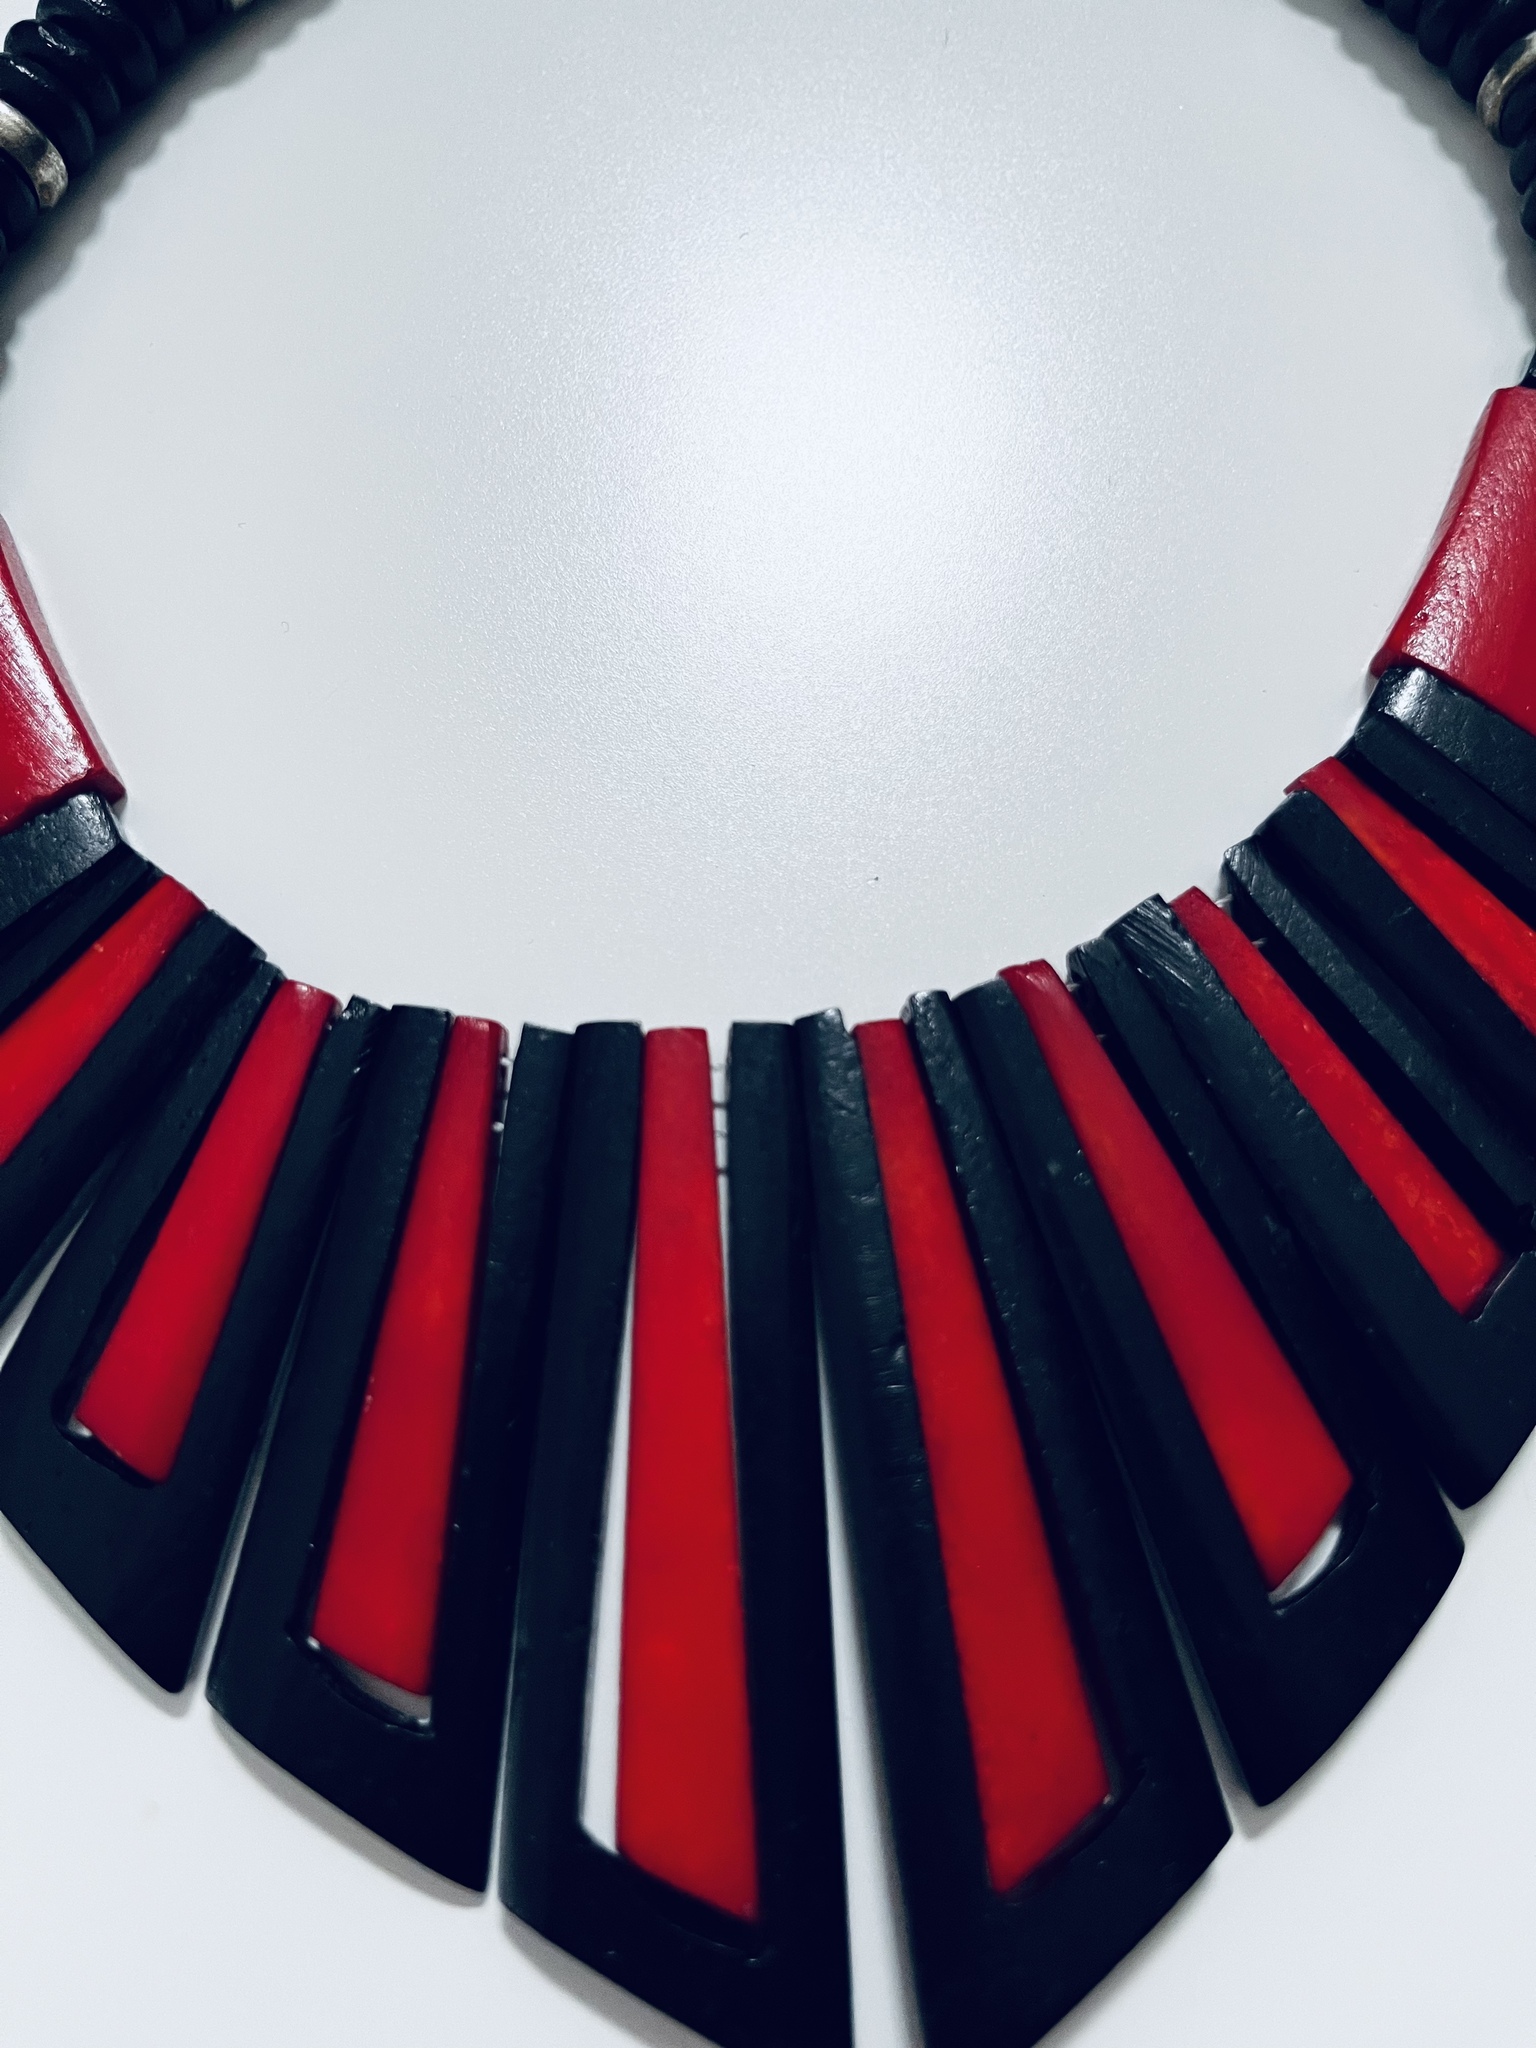 Vintage halsband i svart och rött